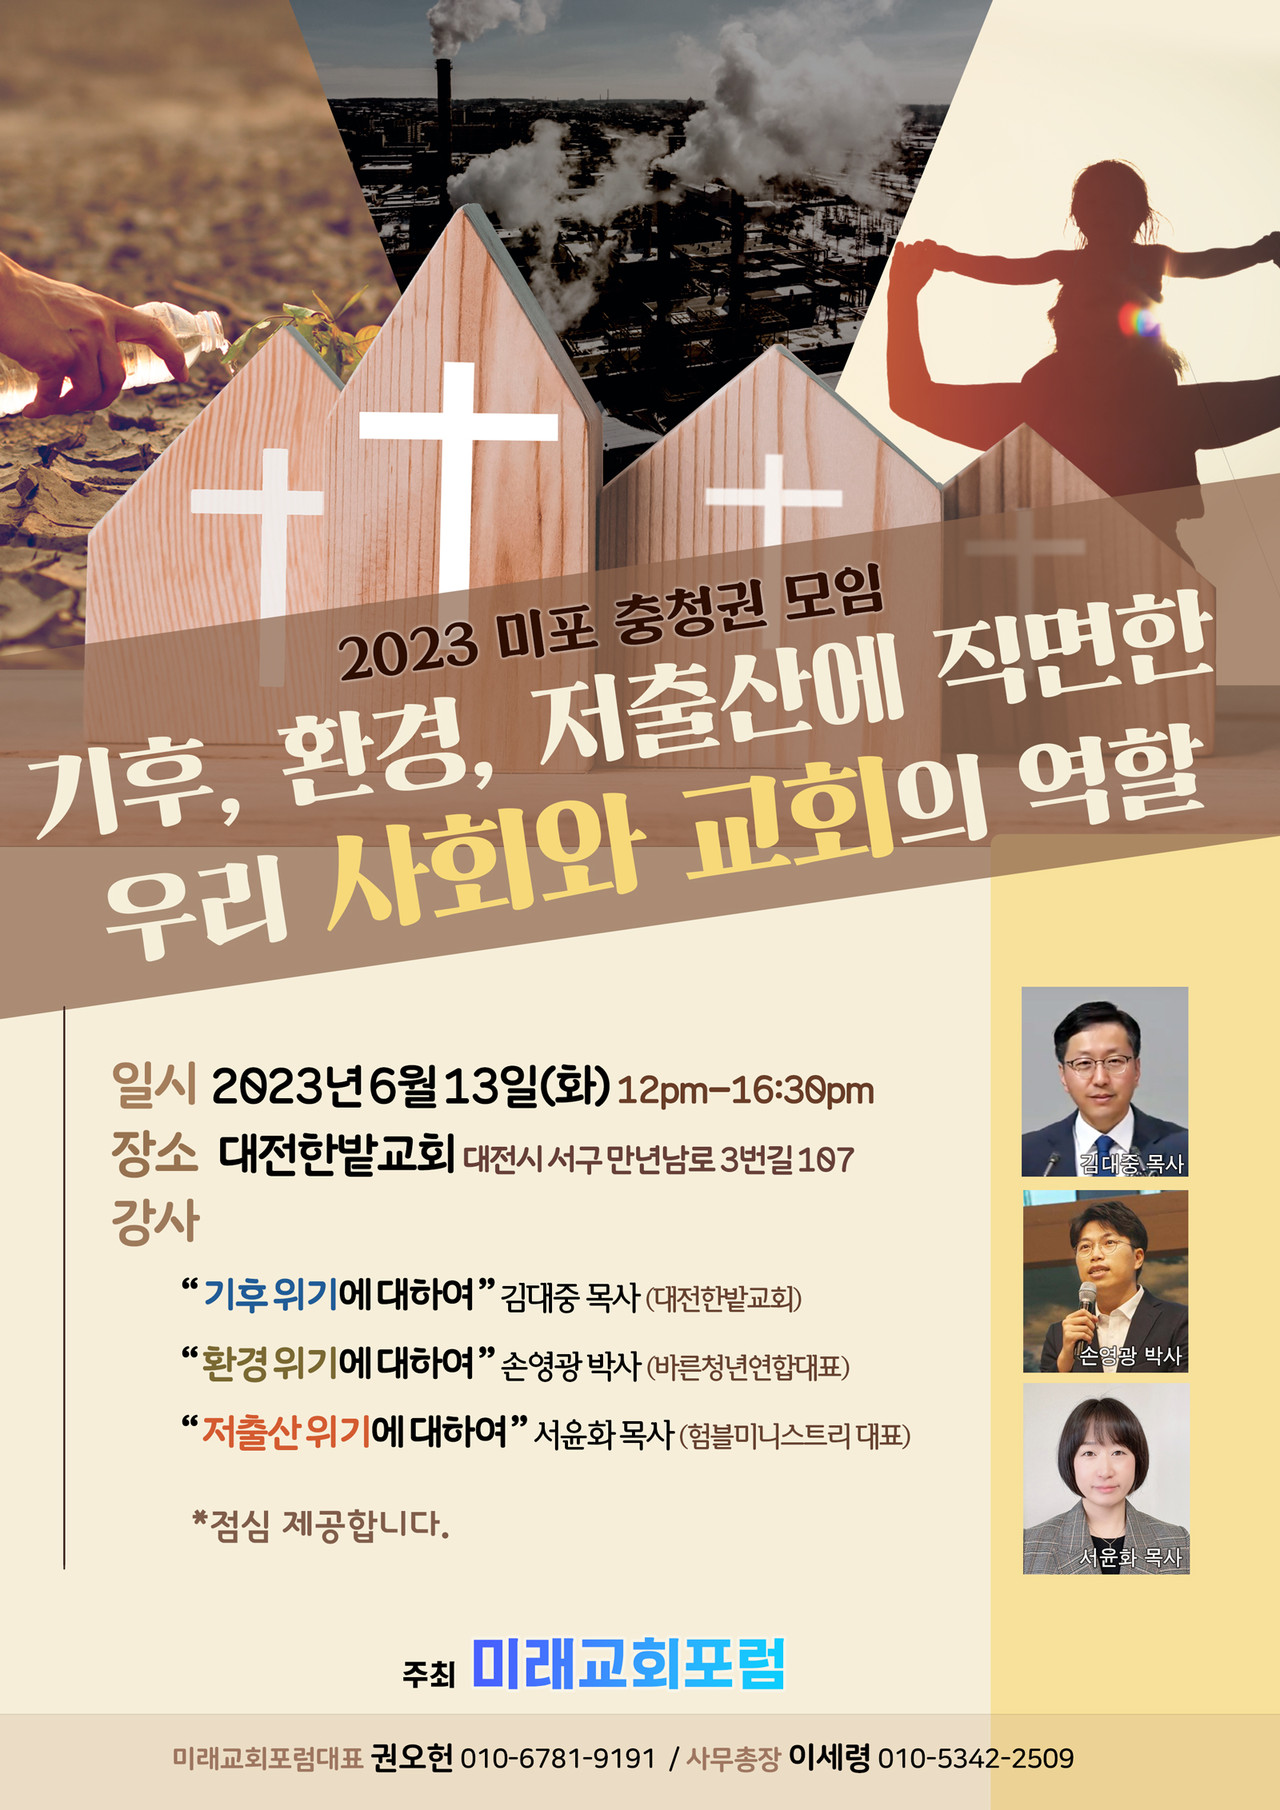 2023 미래교회포럼 충청권 모임: 6월 13일에 대전 한밭교회에서